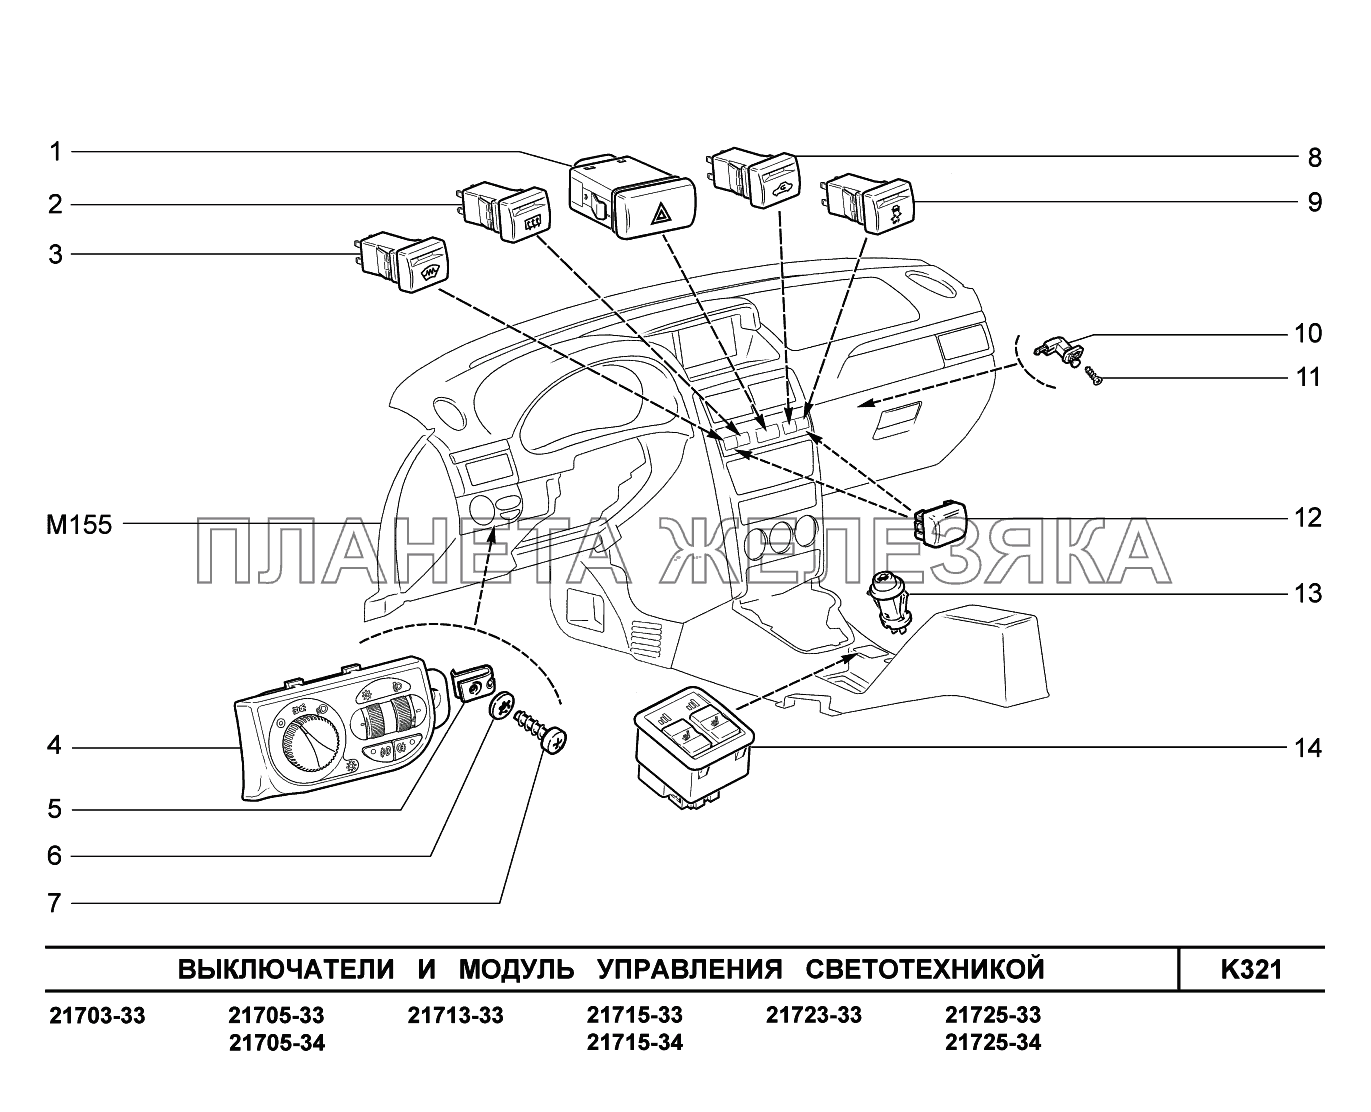 K321. Выключатели и модуль управления светотехникой ВАЗ-2170 